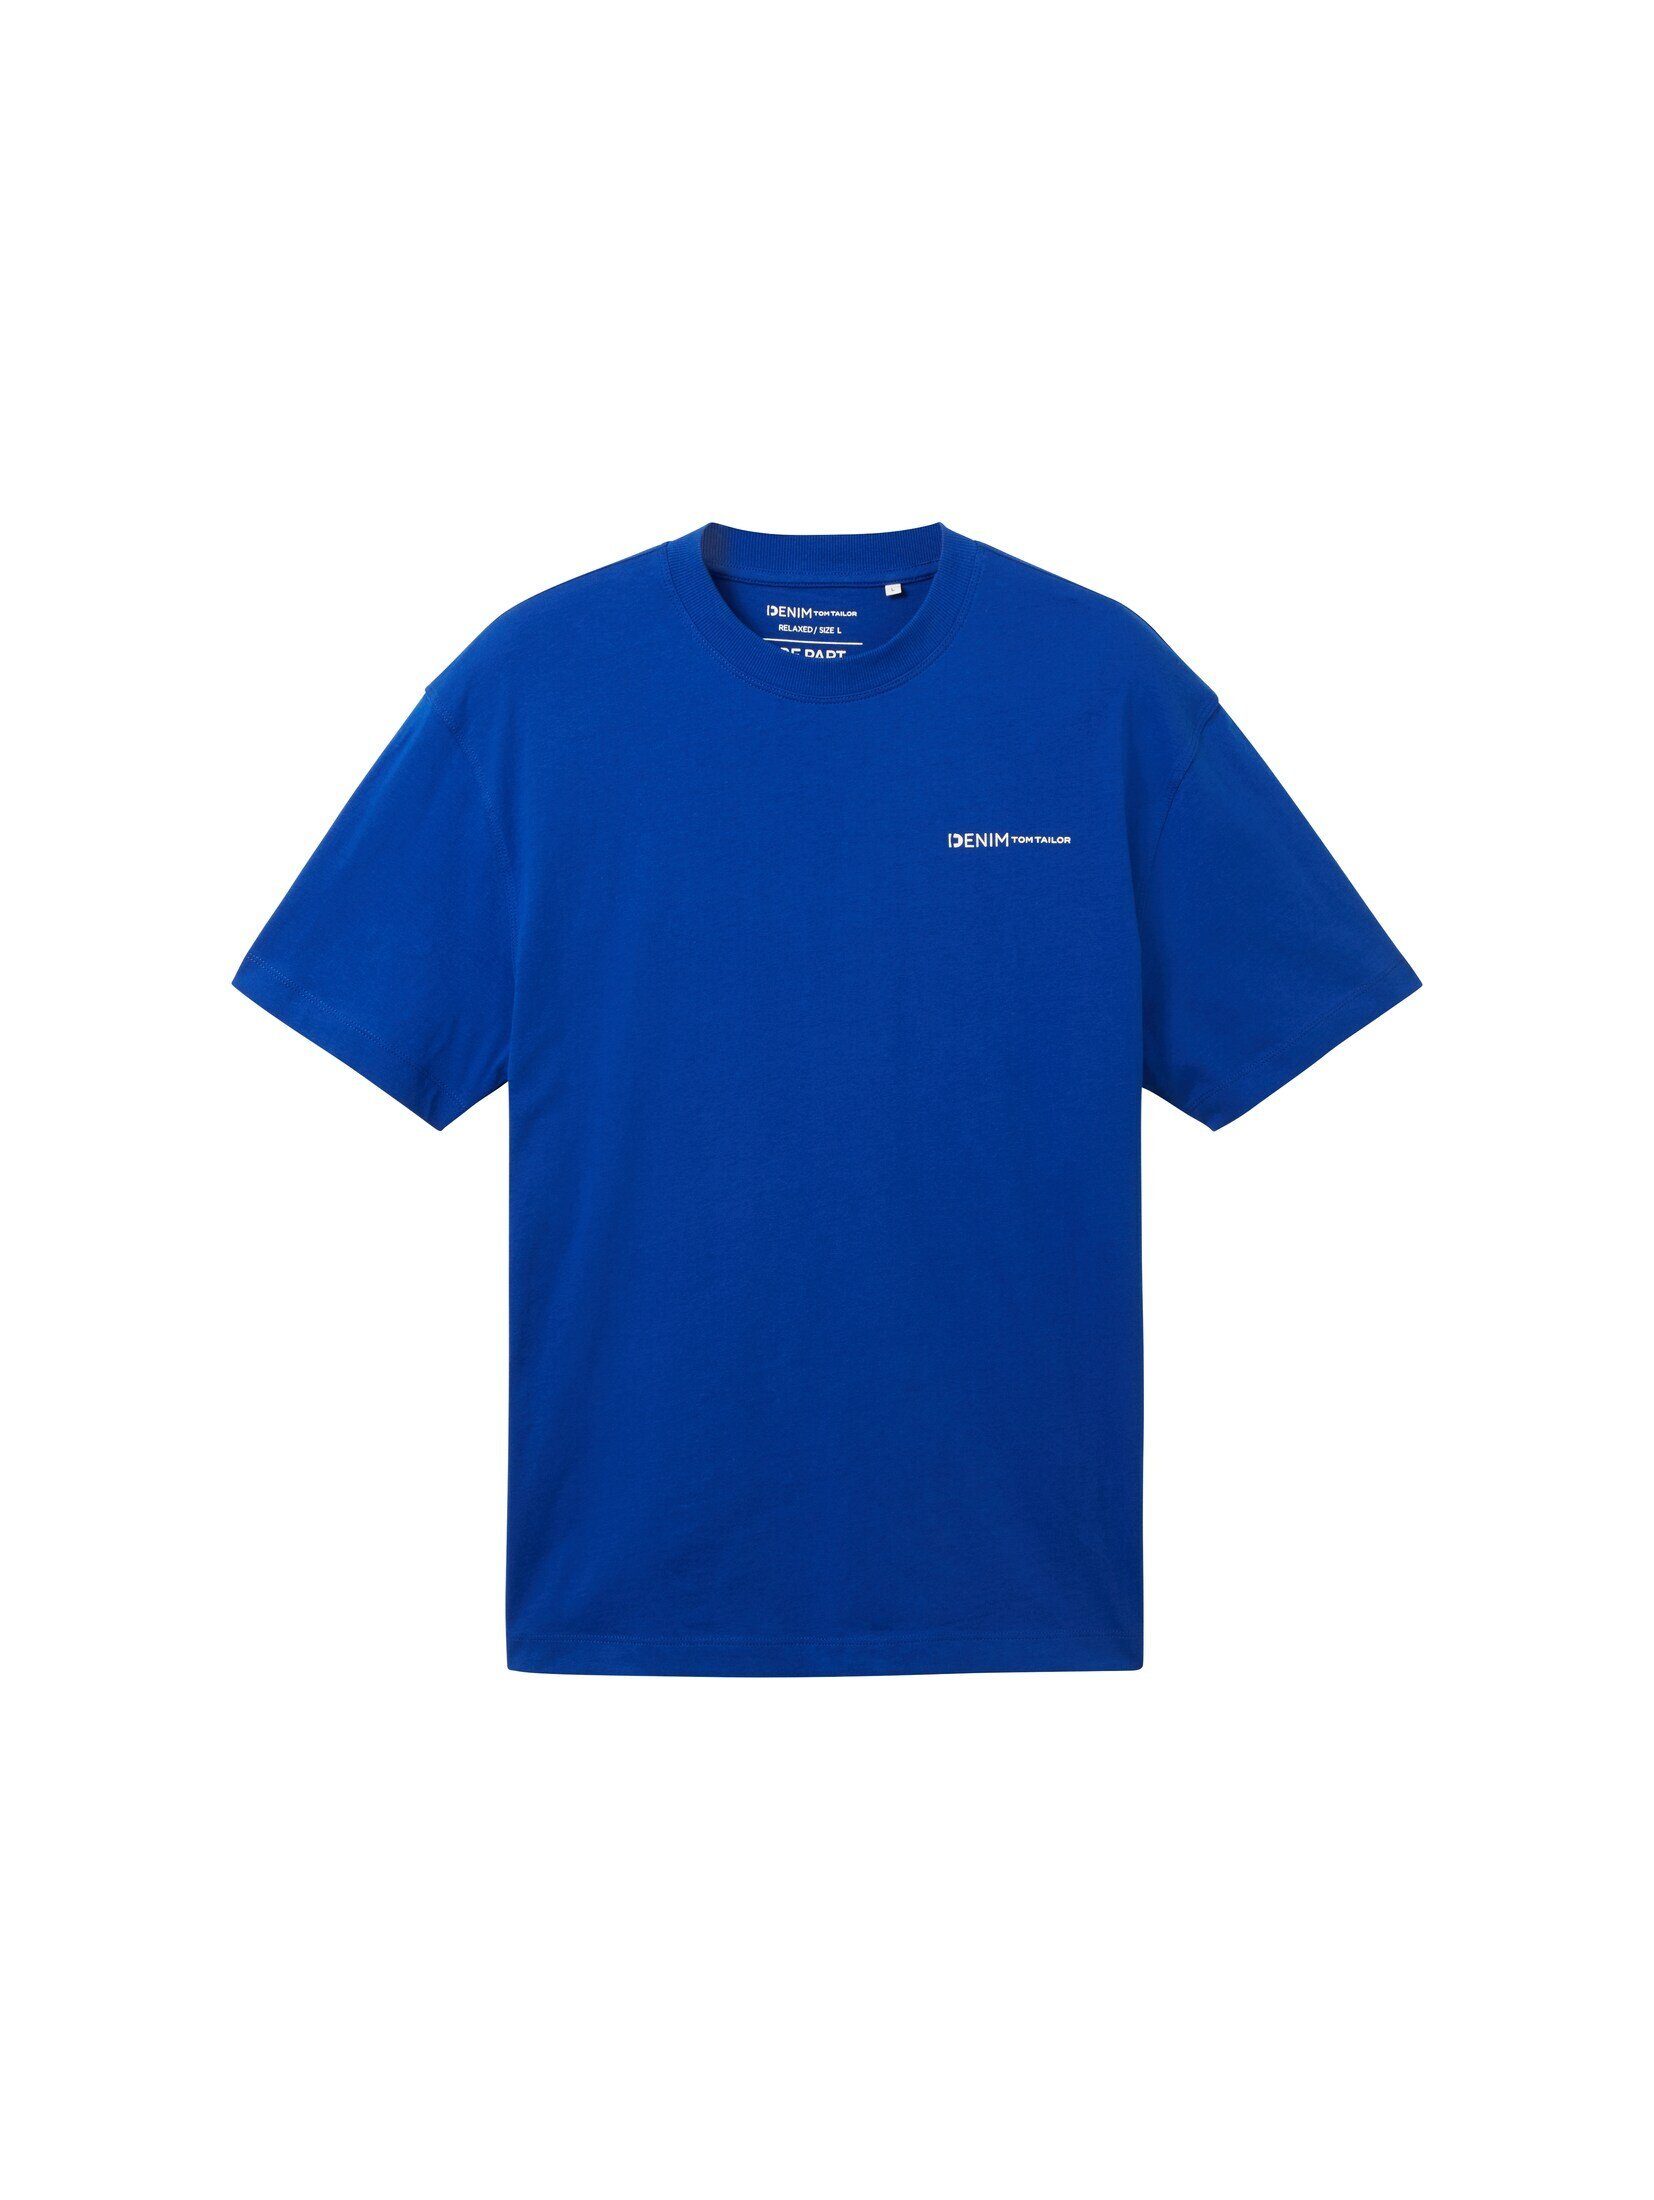 TOM TAILOR Denim T-Shirt T-Shirt royal mit Bio-Baumwolle blue shiny